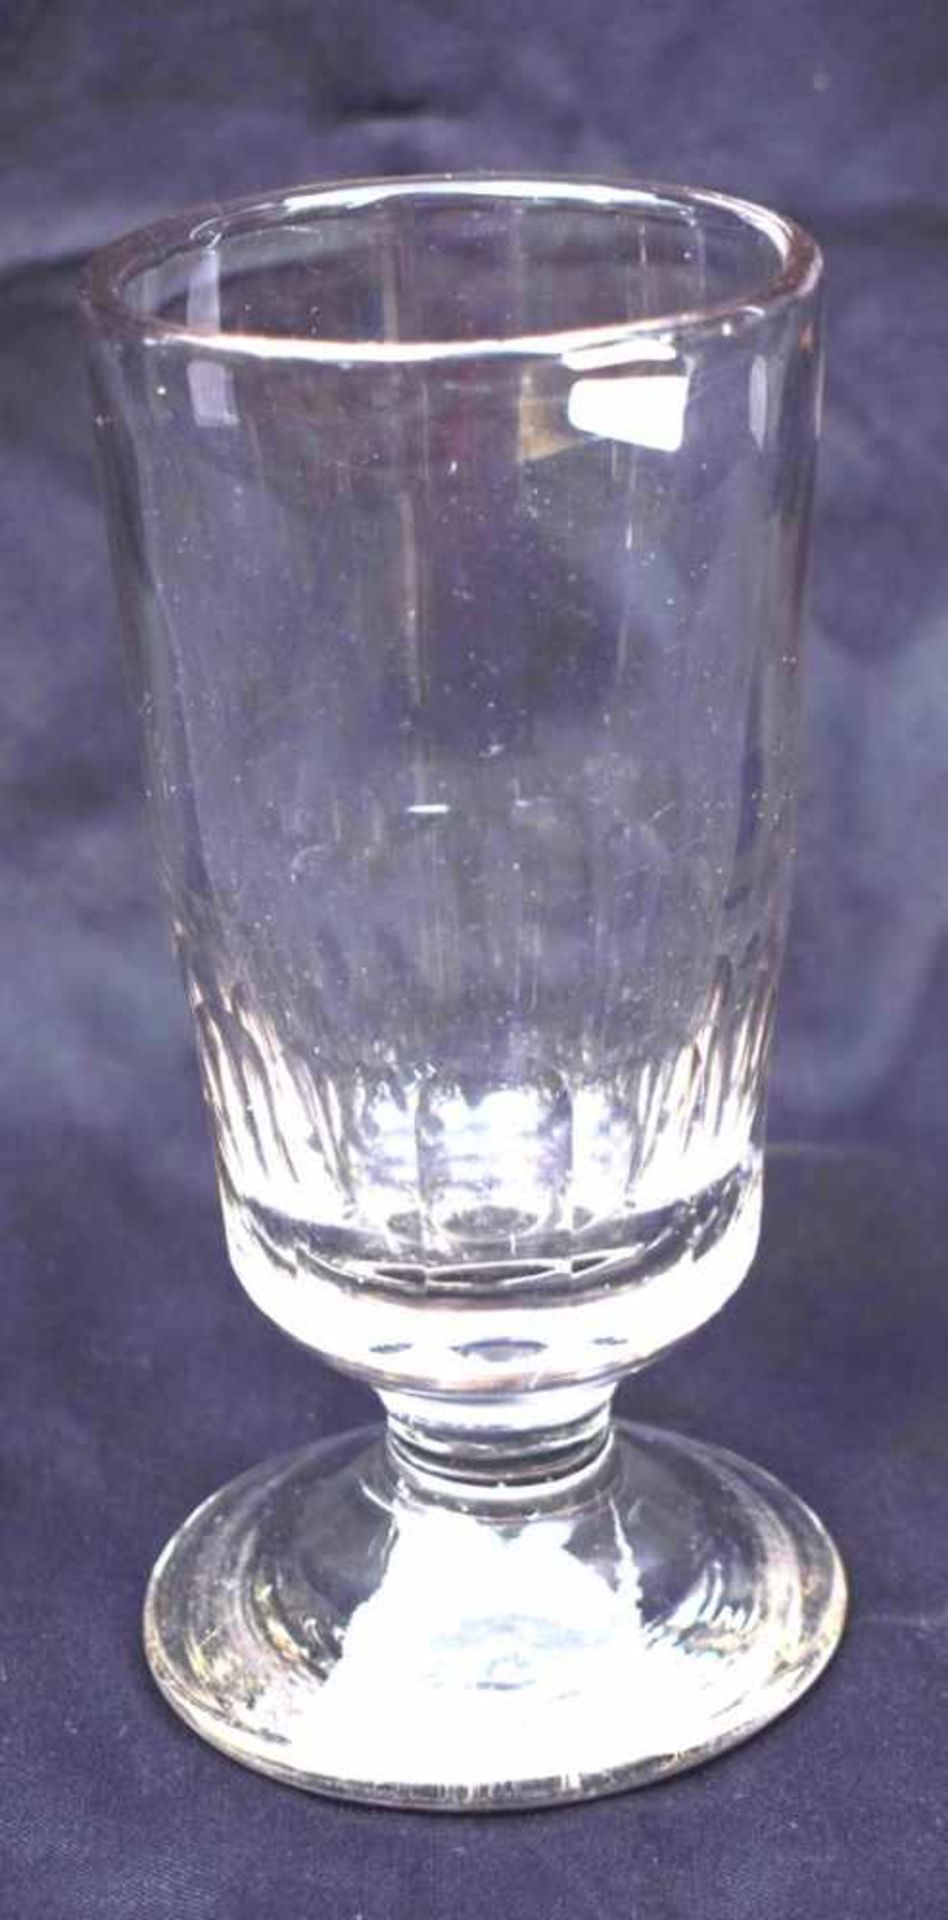 Glasfarbl. Glas, facettiert geschliffen, H 17 cm, 1. Hälfte 19. Jh.